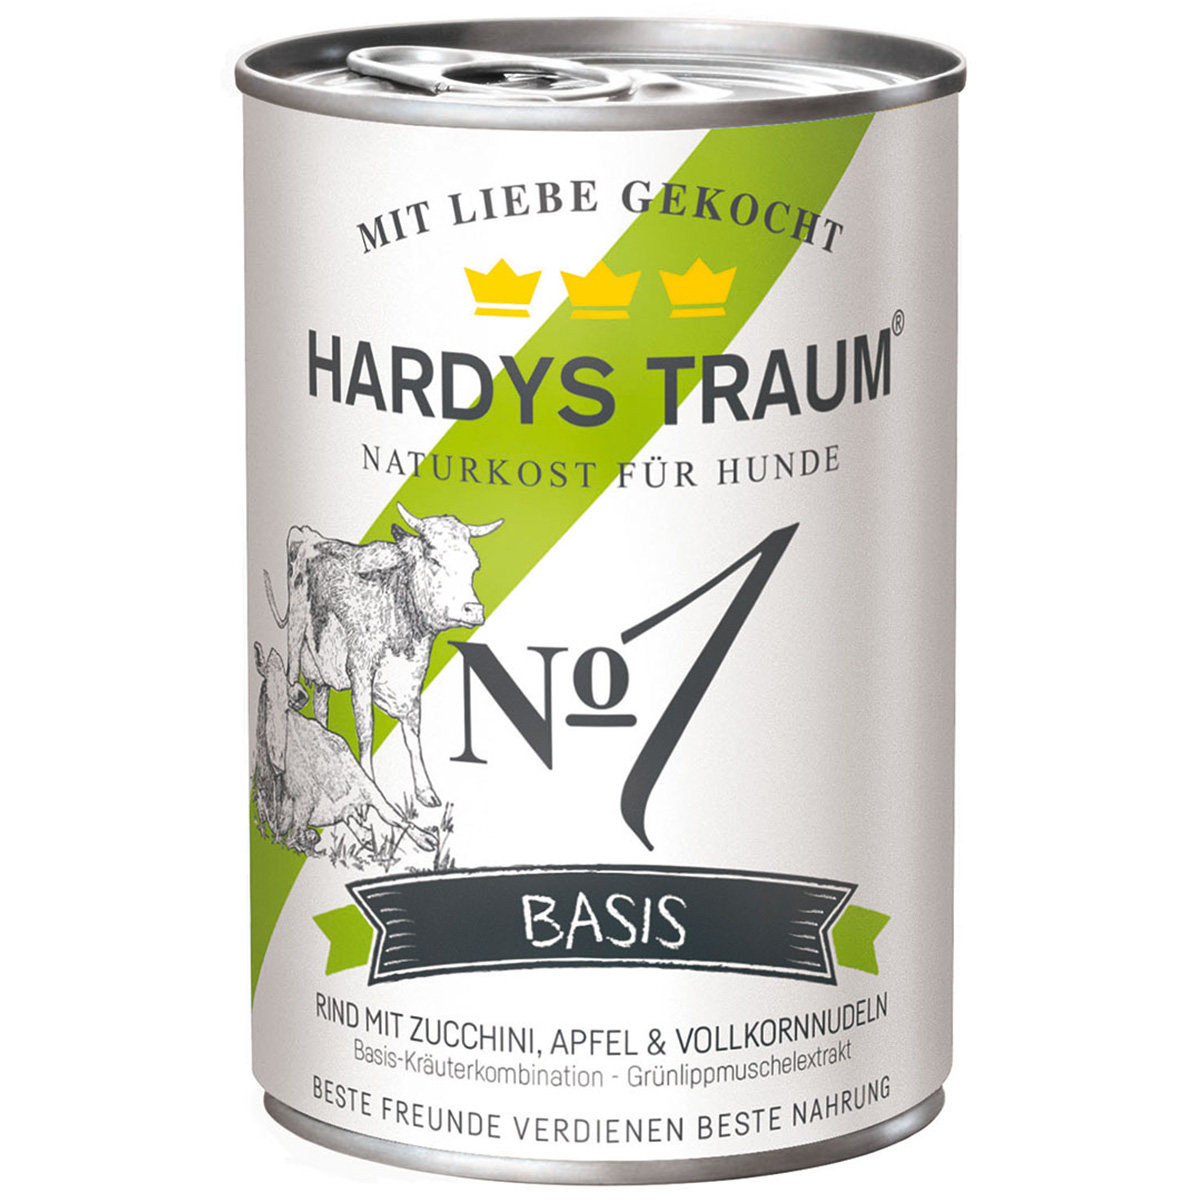 Hardys Traum Basis č. 1 s hovězím masem 6 × 400 g